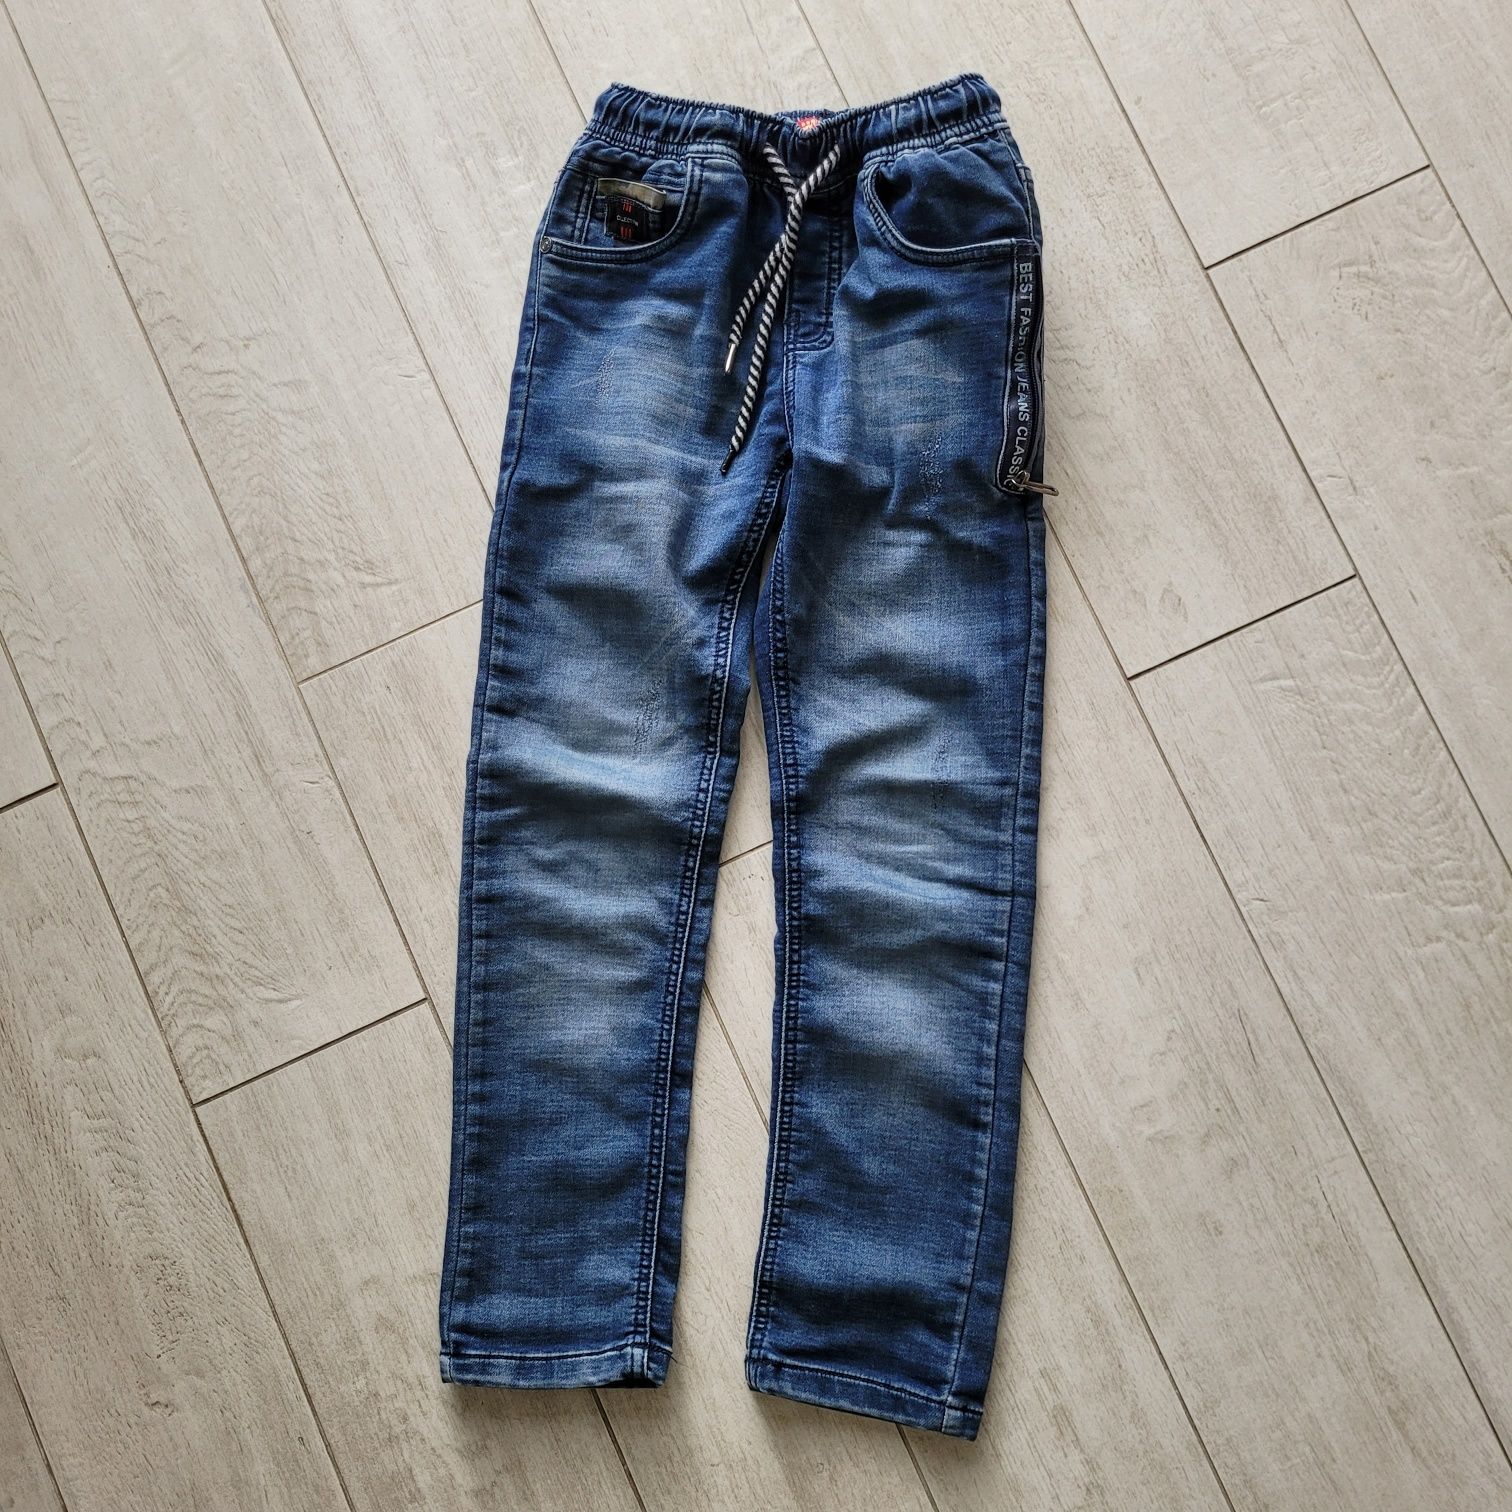 Spodnie jeansy 122-128 niebieskie granatowe 
Rozmiar 122-128